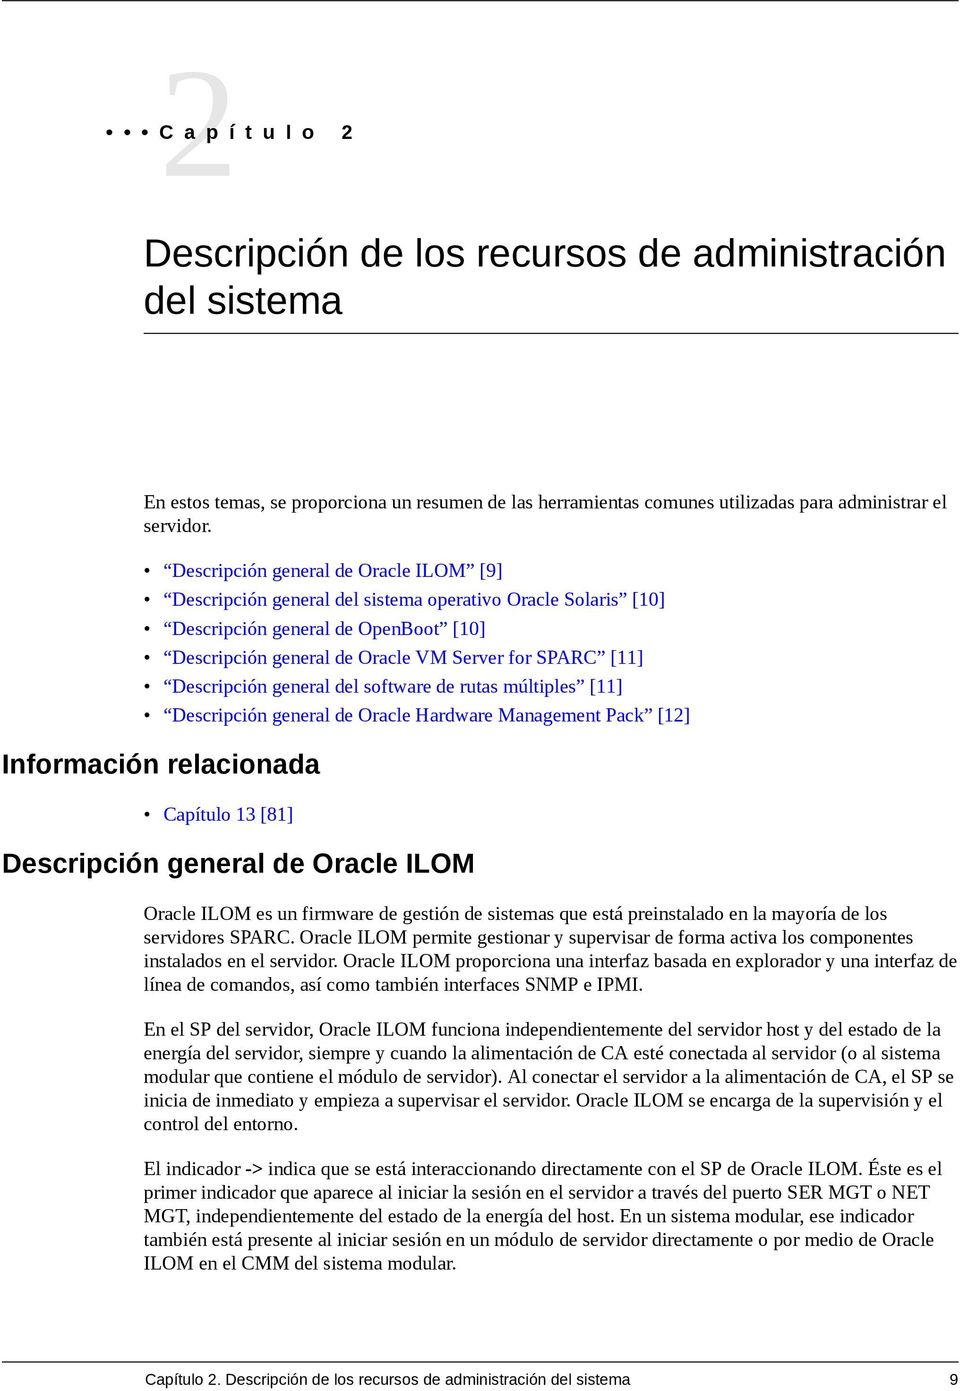 Descripción general del software de rutas múltiples [11] Descripción general de Oracle Hardware Management Pack [12] Capítulo 13 [81] Descripción general de Oracle ILOM Oracle ILOM es un firmware de